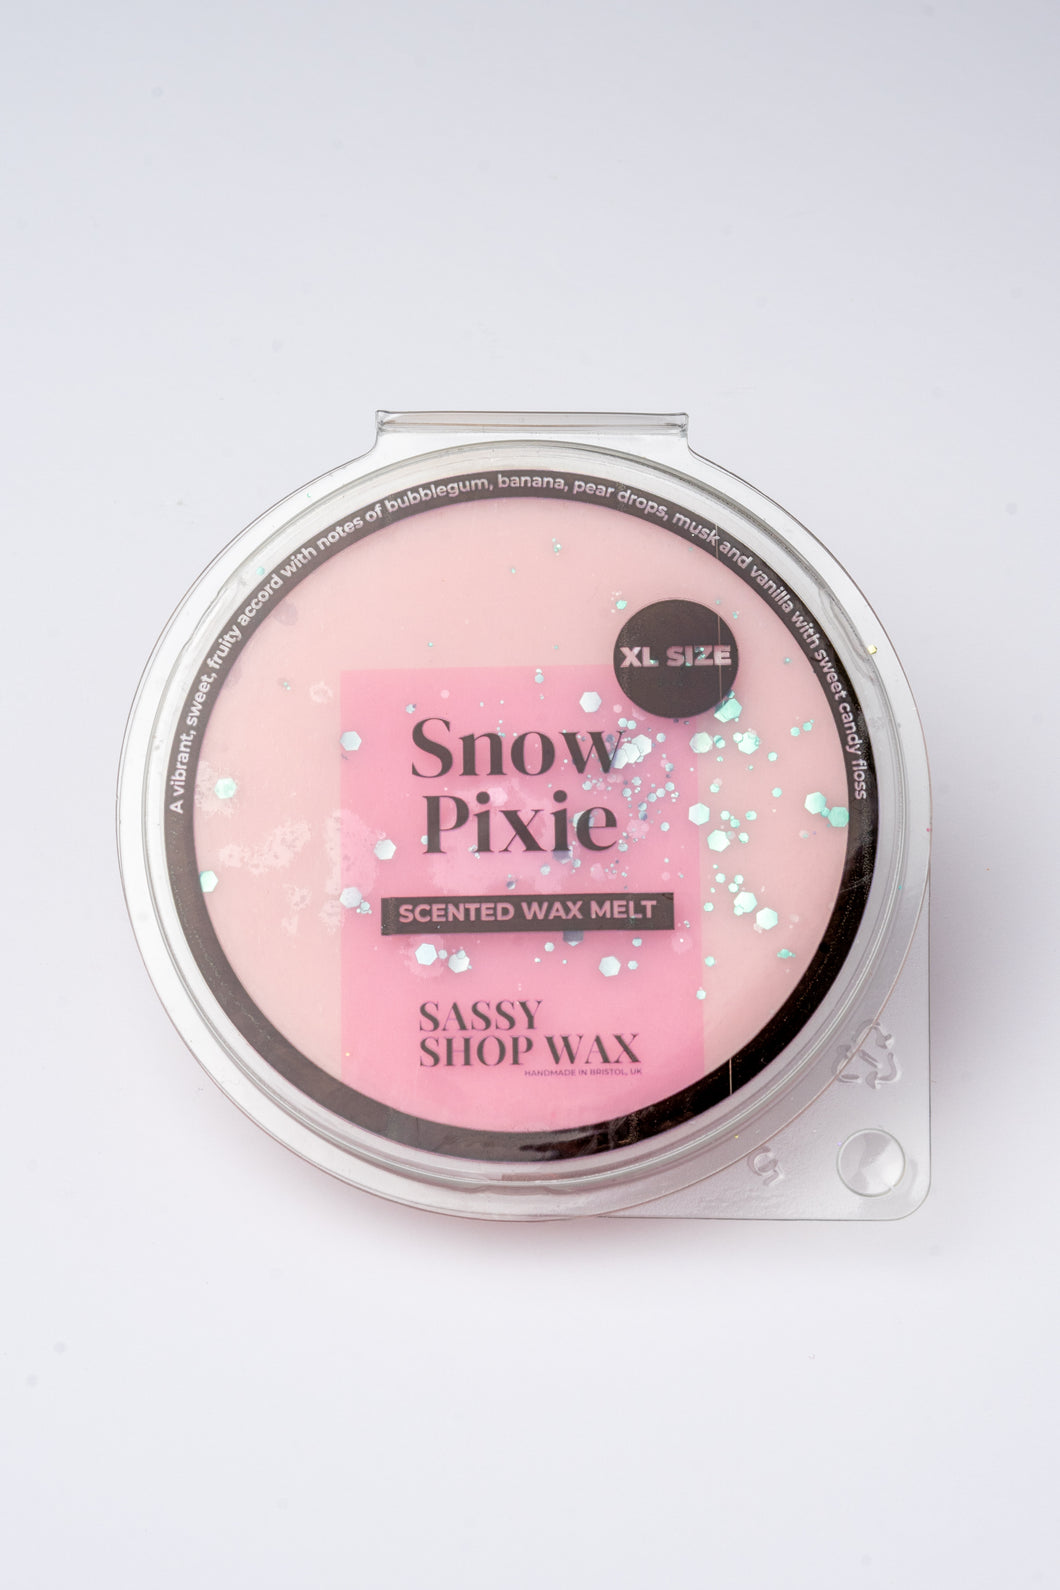 Snow Pixie Wax Melt